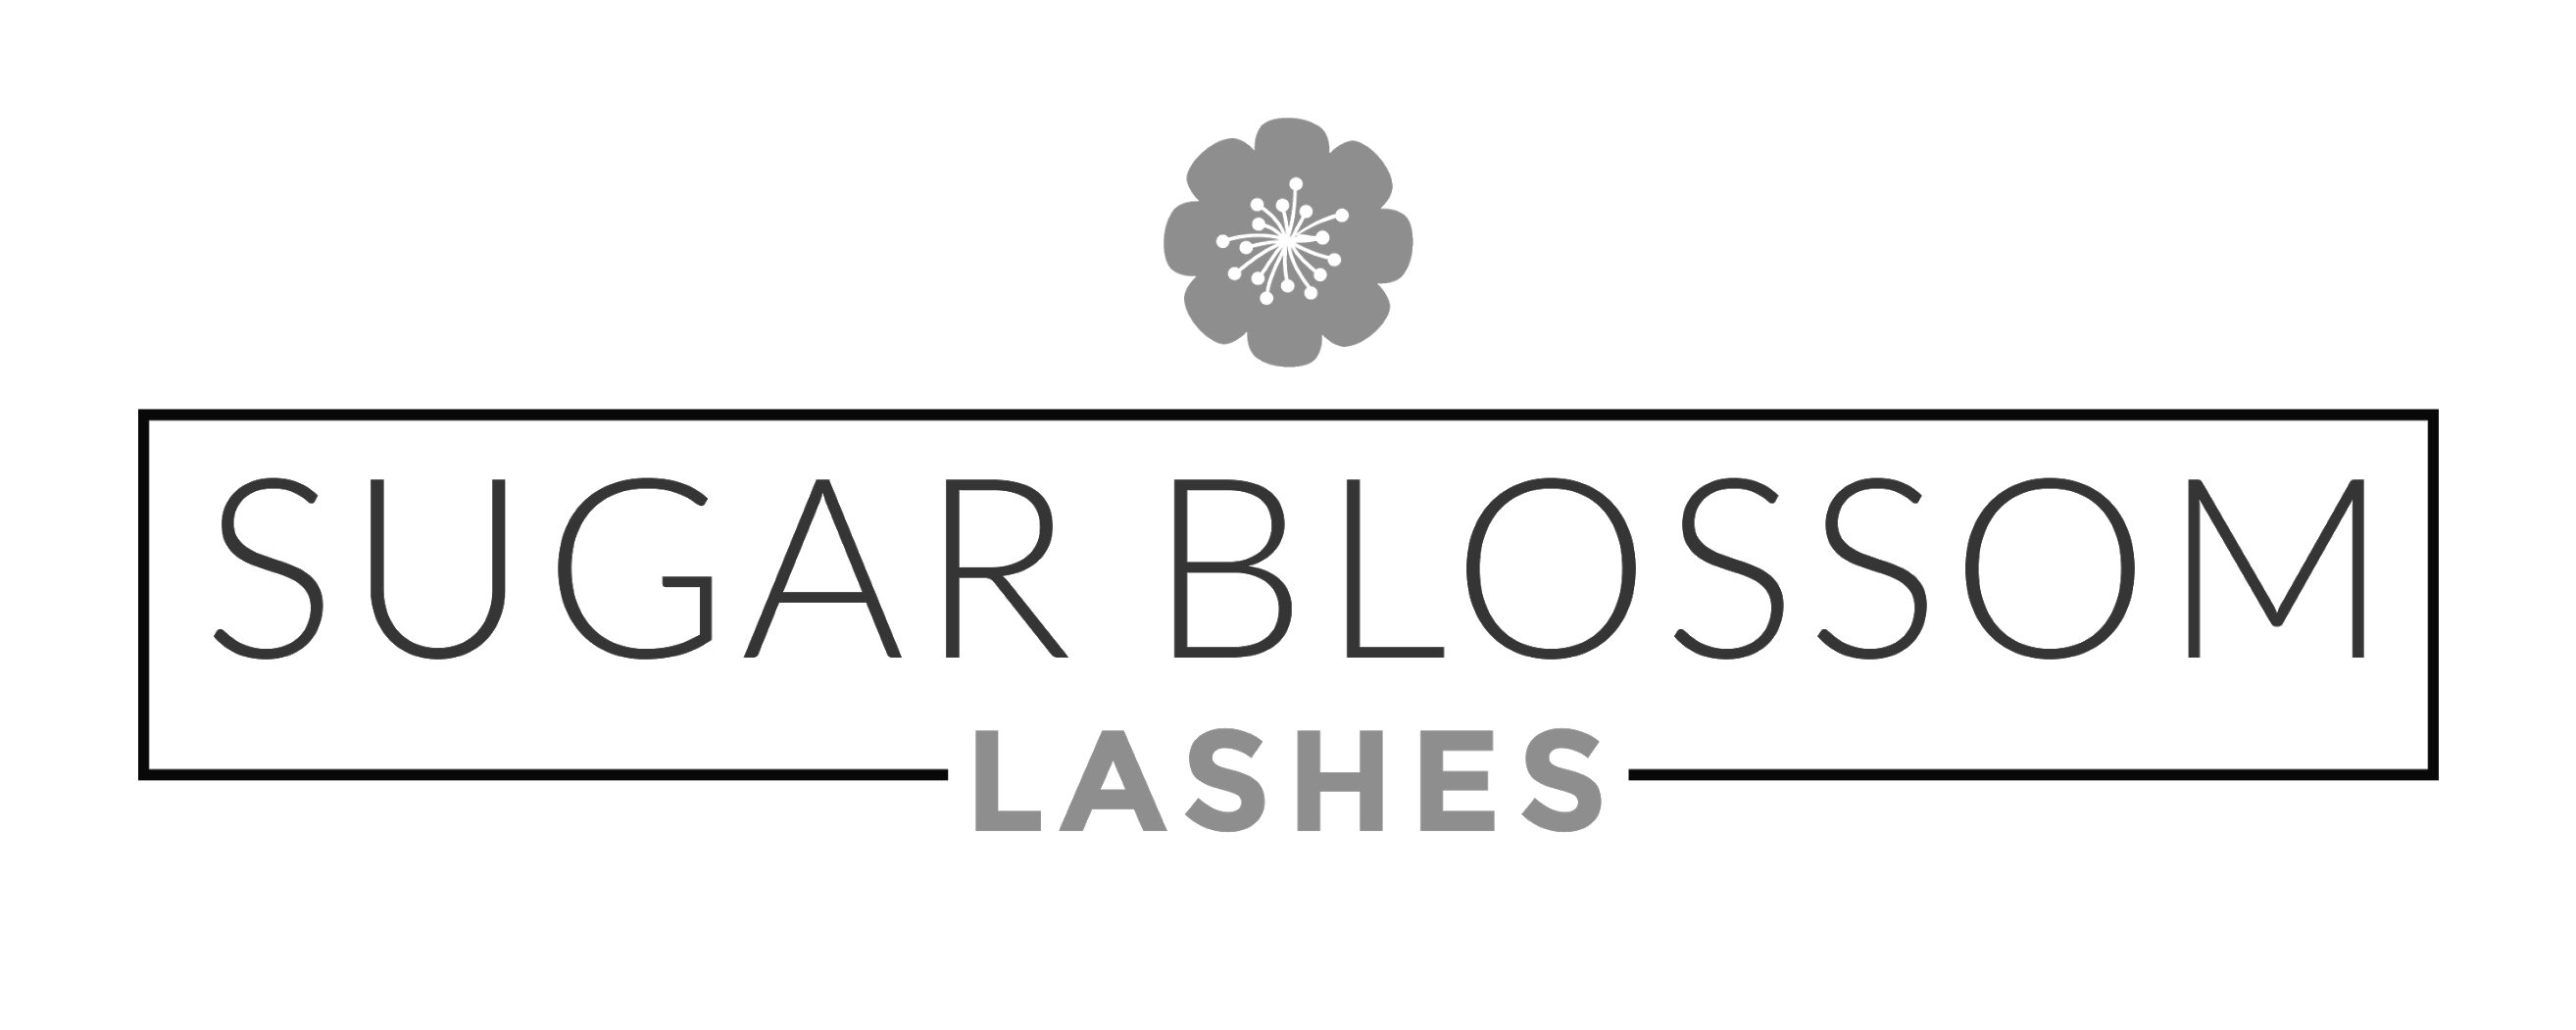 sugar-blossom-lashes-logo